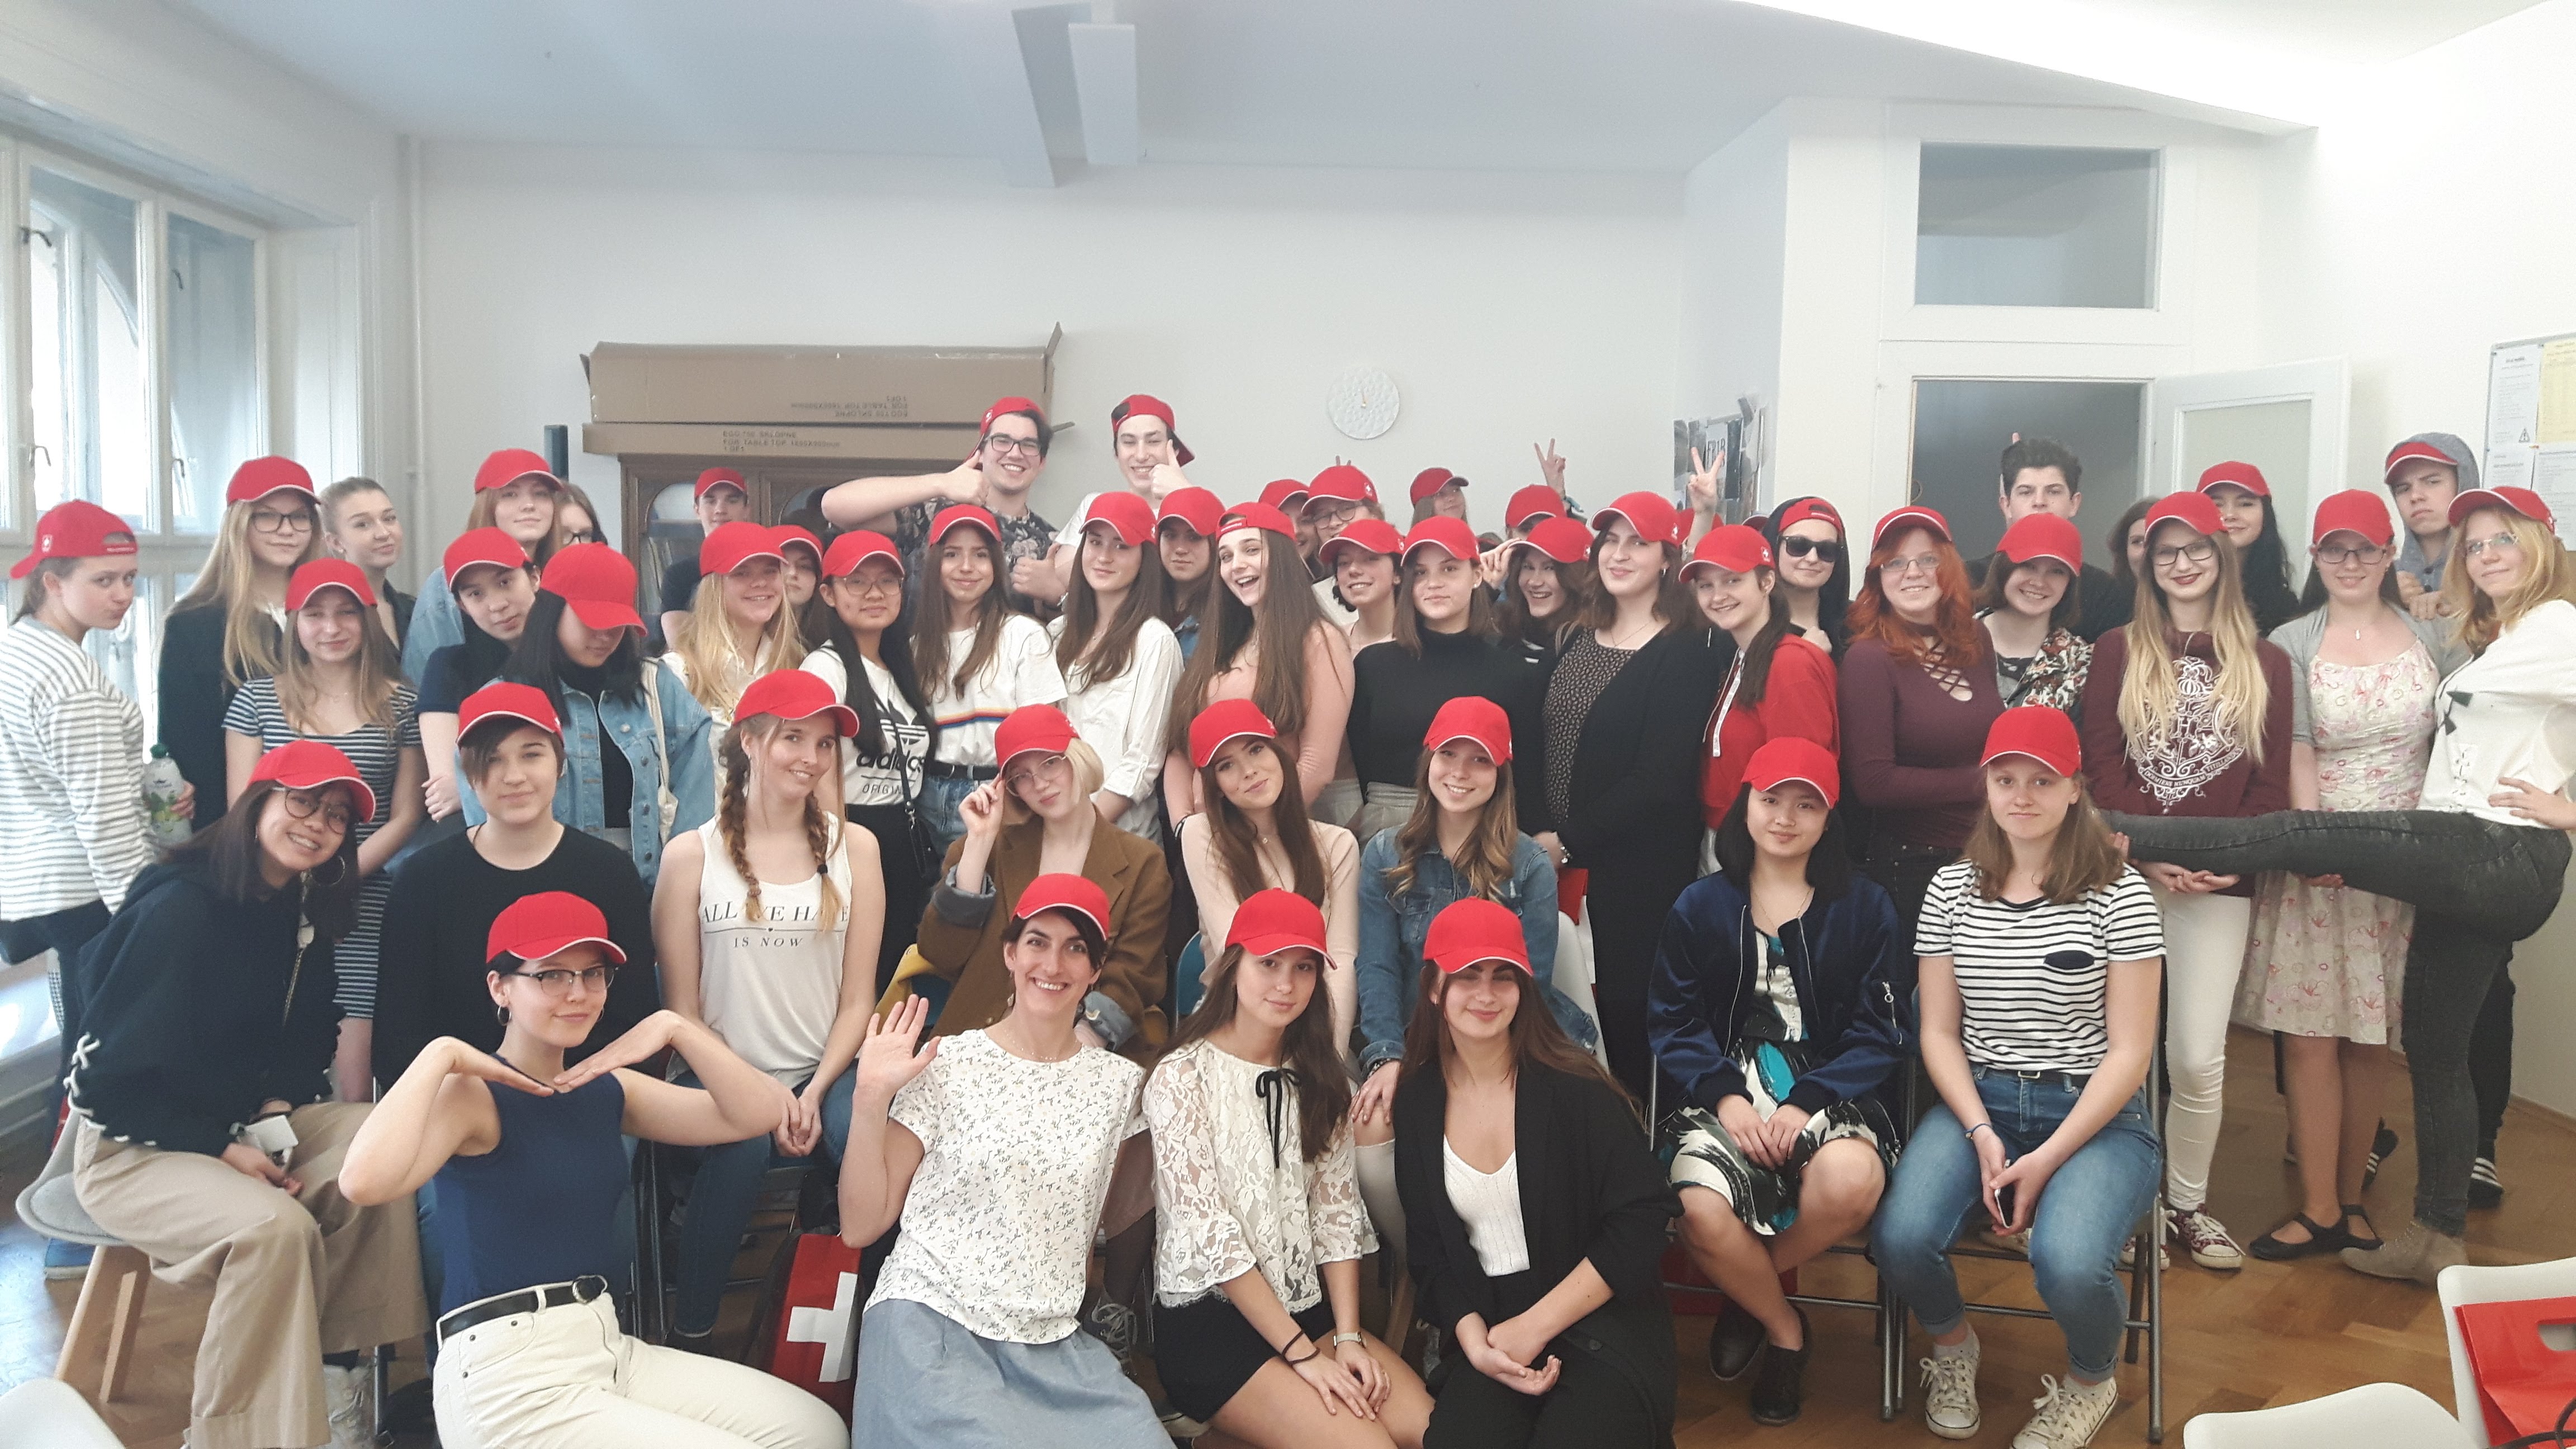 Dne 12.04. 2018 navštívilo výstavu 58 studentů Anglicko-českého gymnázia Amazon. Společně se spolupracovníky velvyslanectví se aktivně zúčastnili programu, který byl pro ně speciálně připraven na téma domov a vlast.